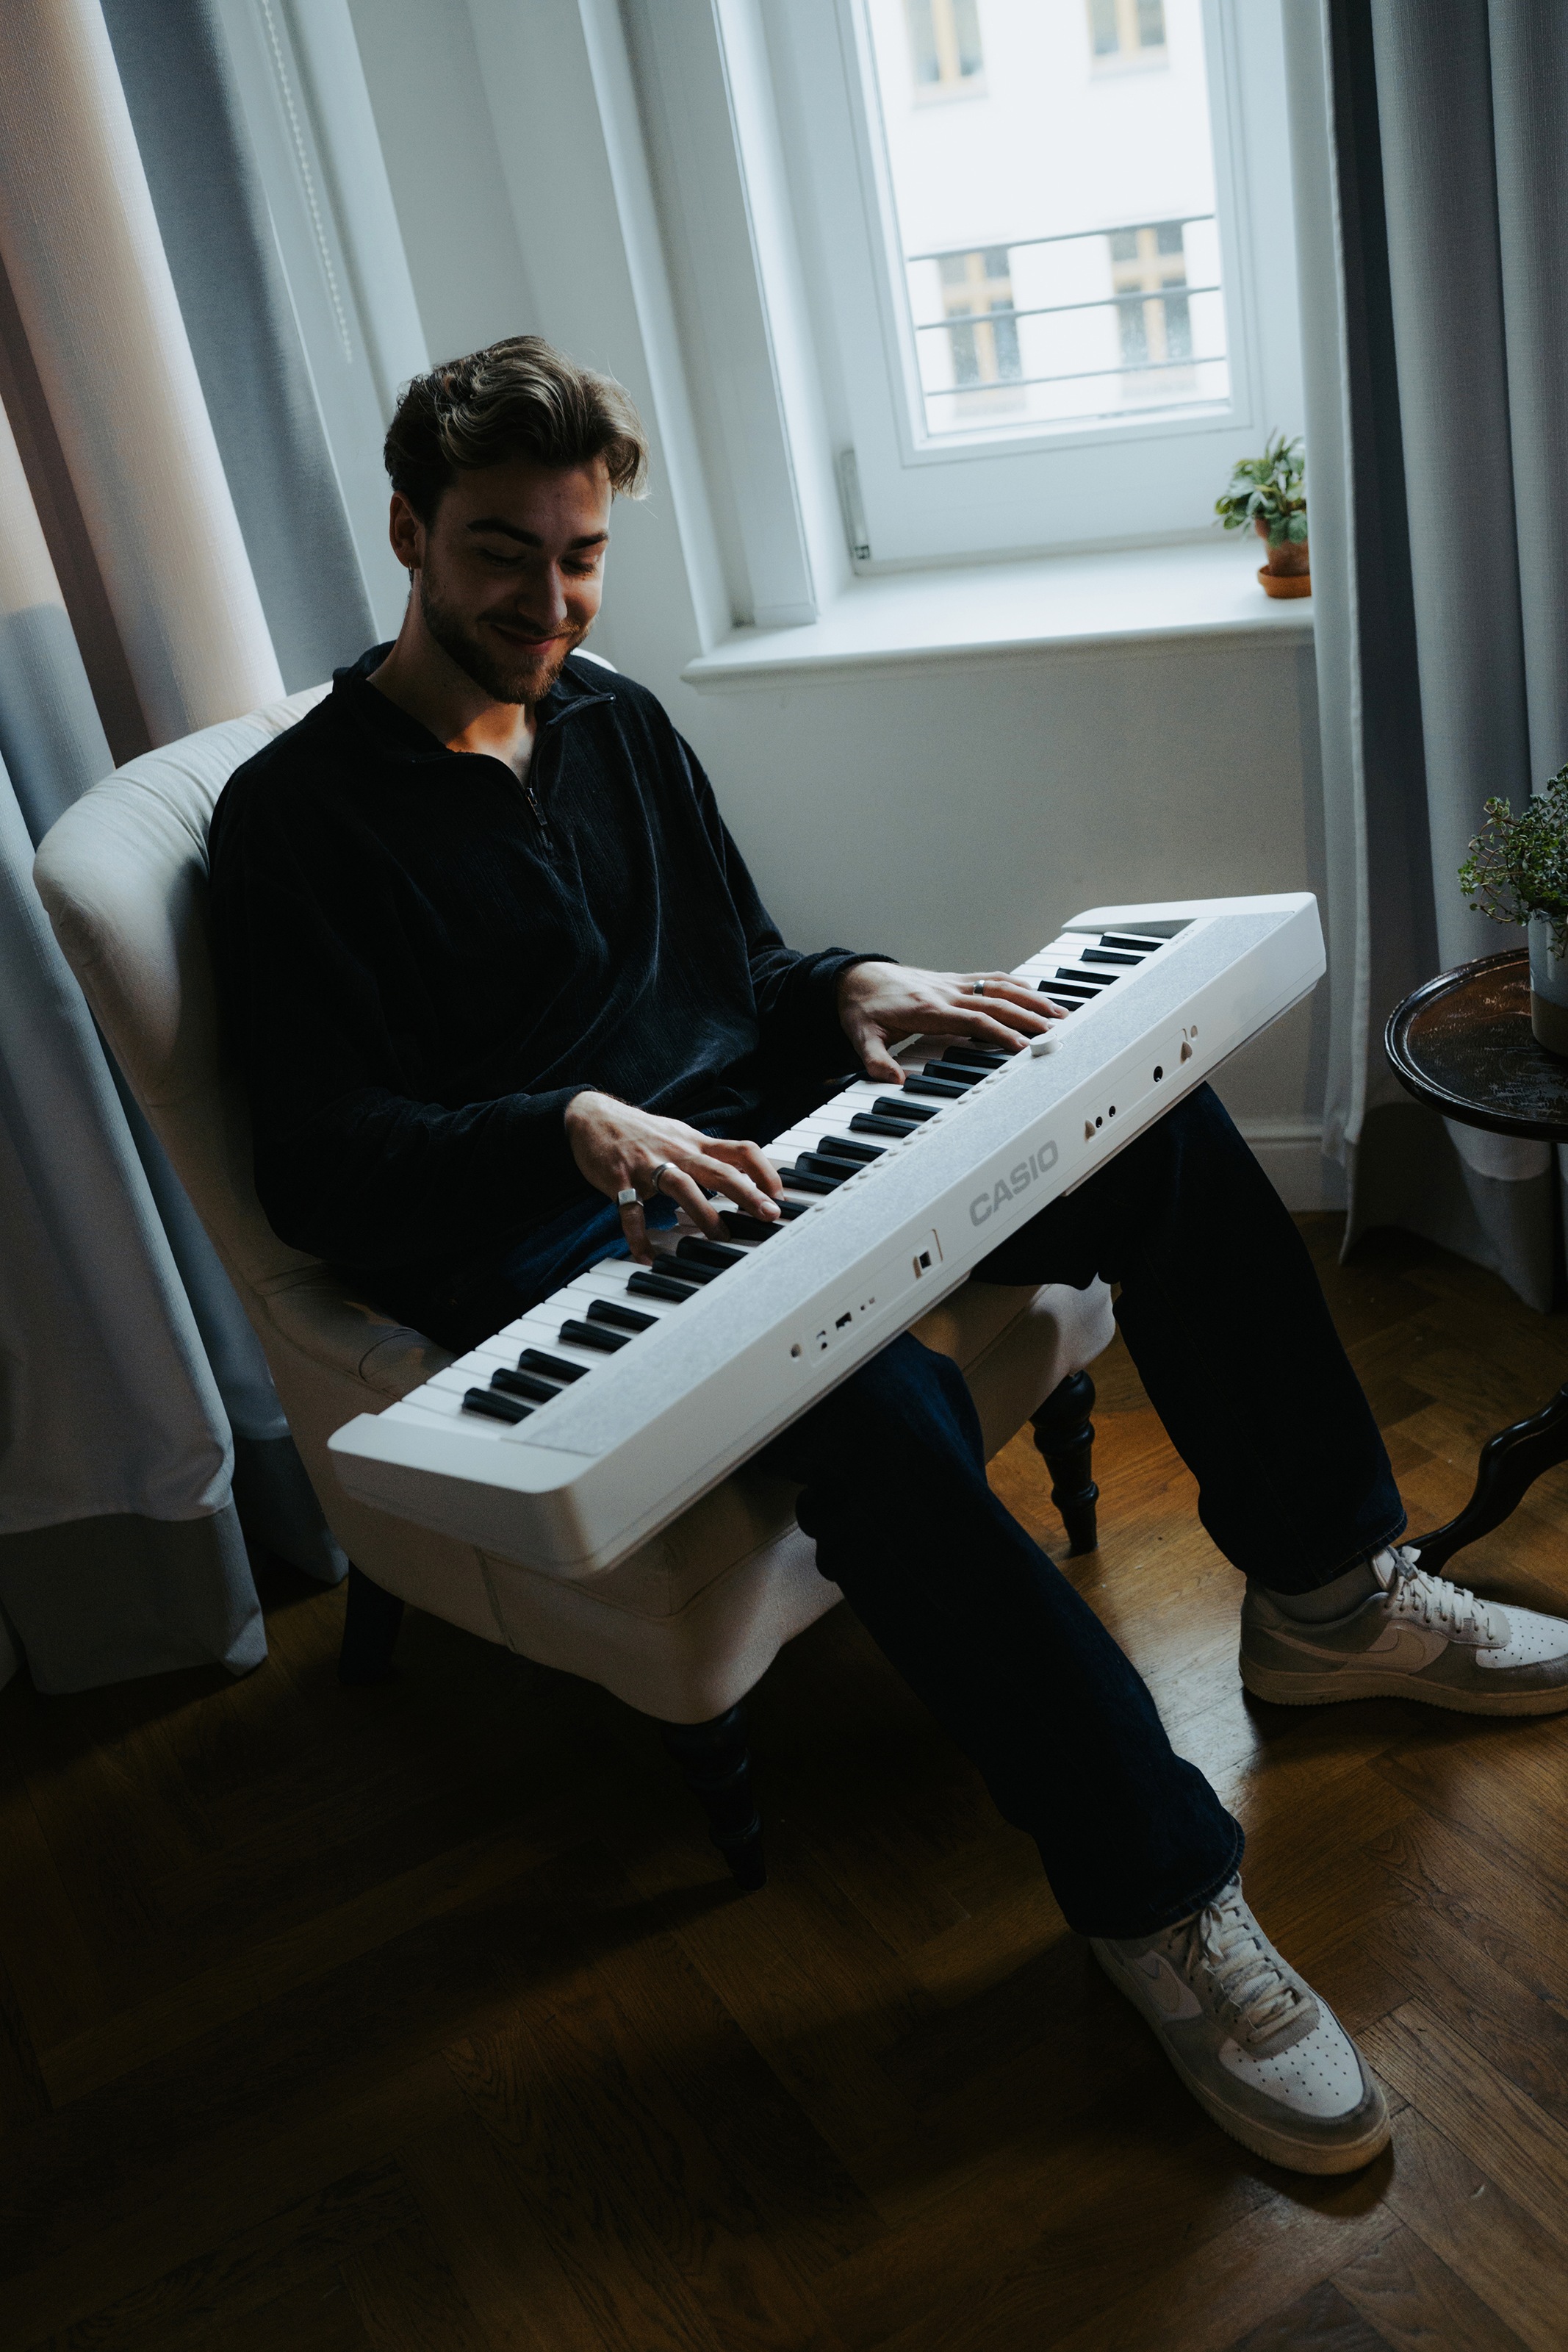 CASIO Home-Keyboard »Piano-Keyboard, CT-S1WESP«, ideal für Piano-Einsteiger und Klanggourmets